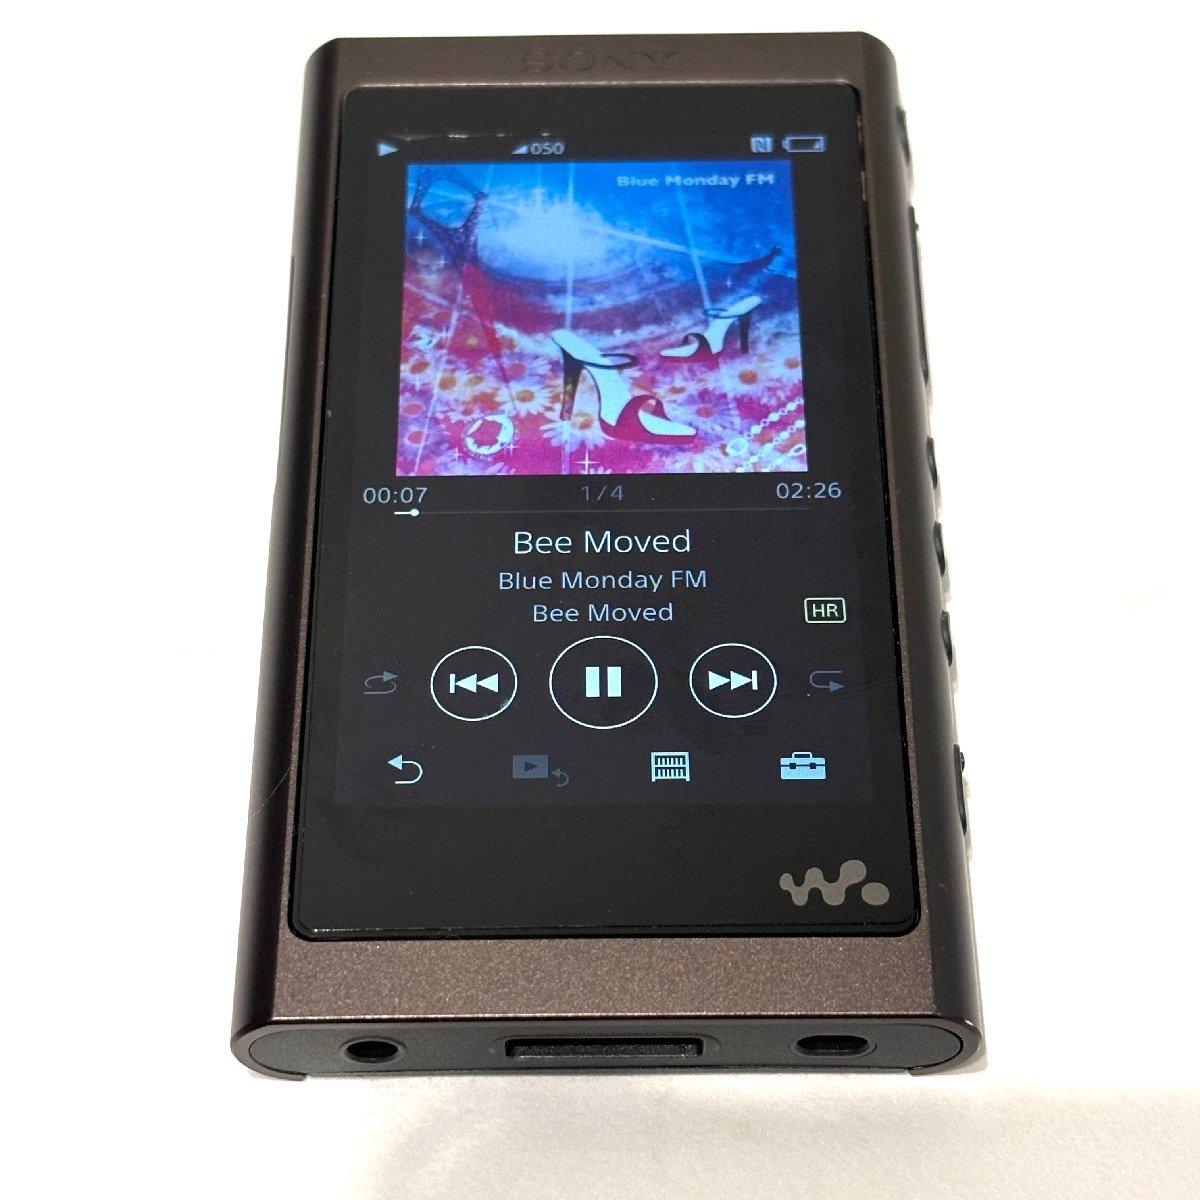 SONY ソニー WALKMAN ウォークマン NW-A56 グレイリッシュブラック 薄型 音楽 Bluetoothレシーバー ハイレゾ音源対応 語学学習 趣味 HMY_画像1